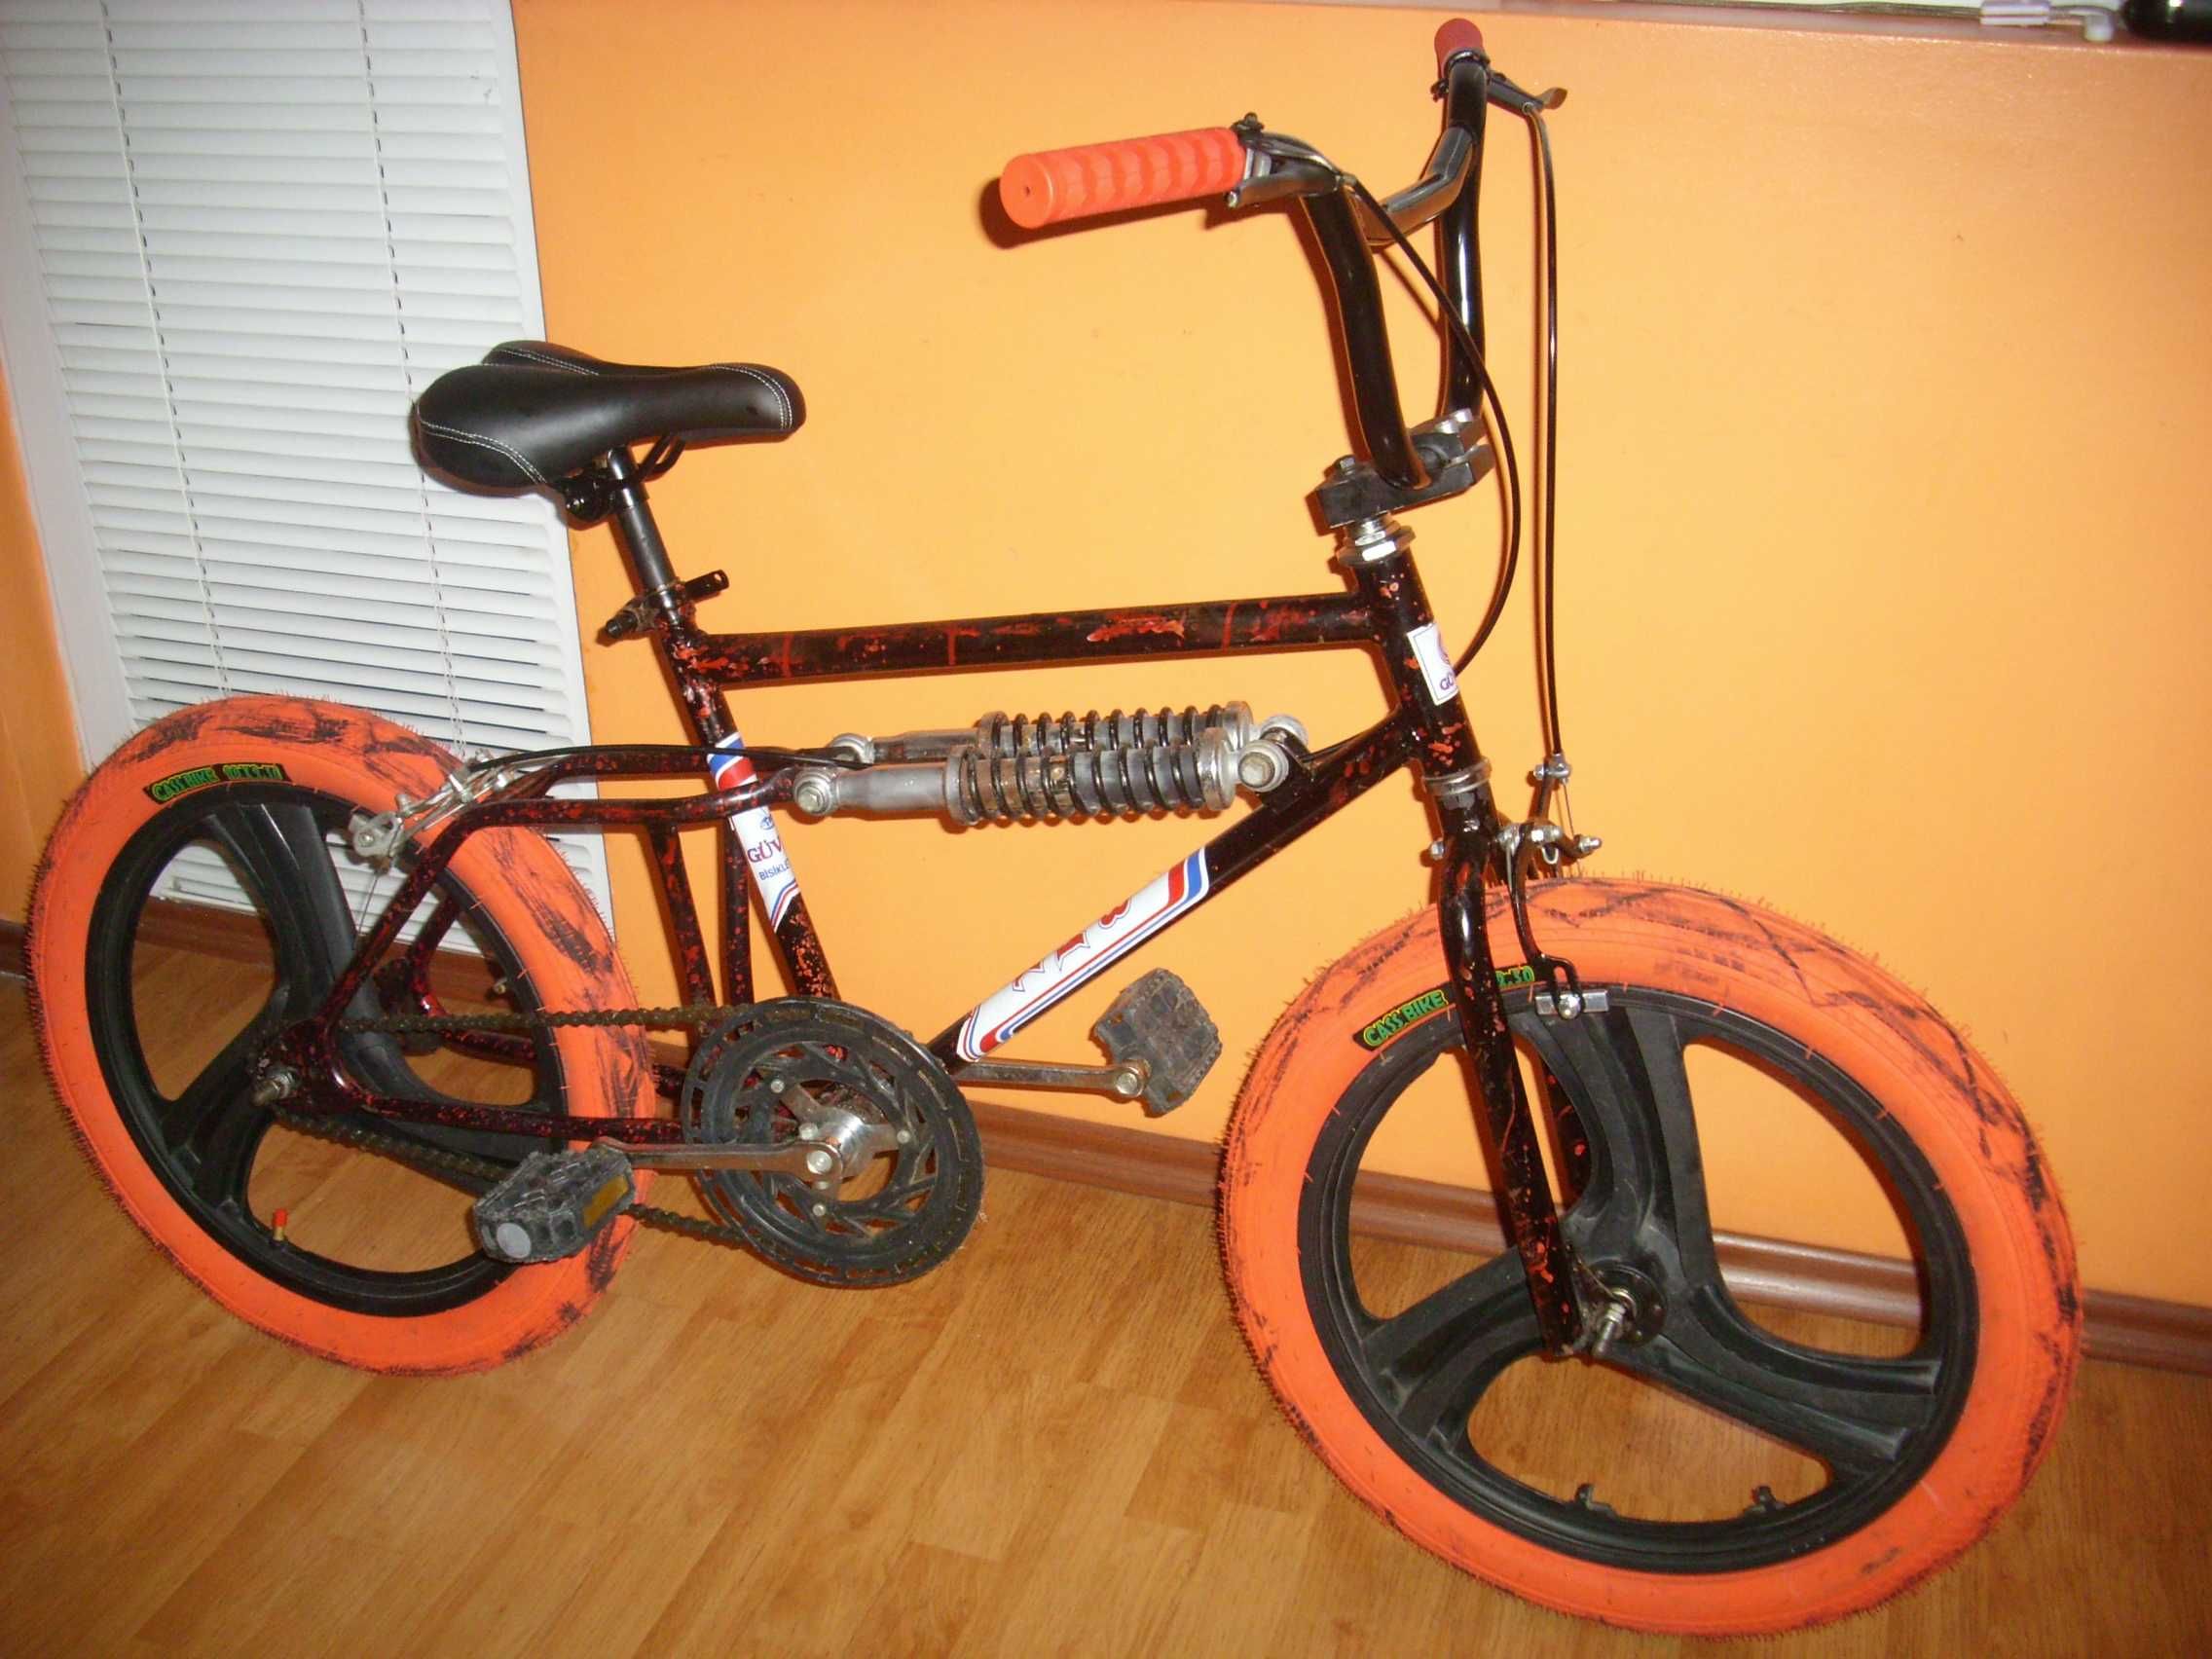 Колекционерски БМХ, BMX Old School 20"(велосипед,колело).1977г.